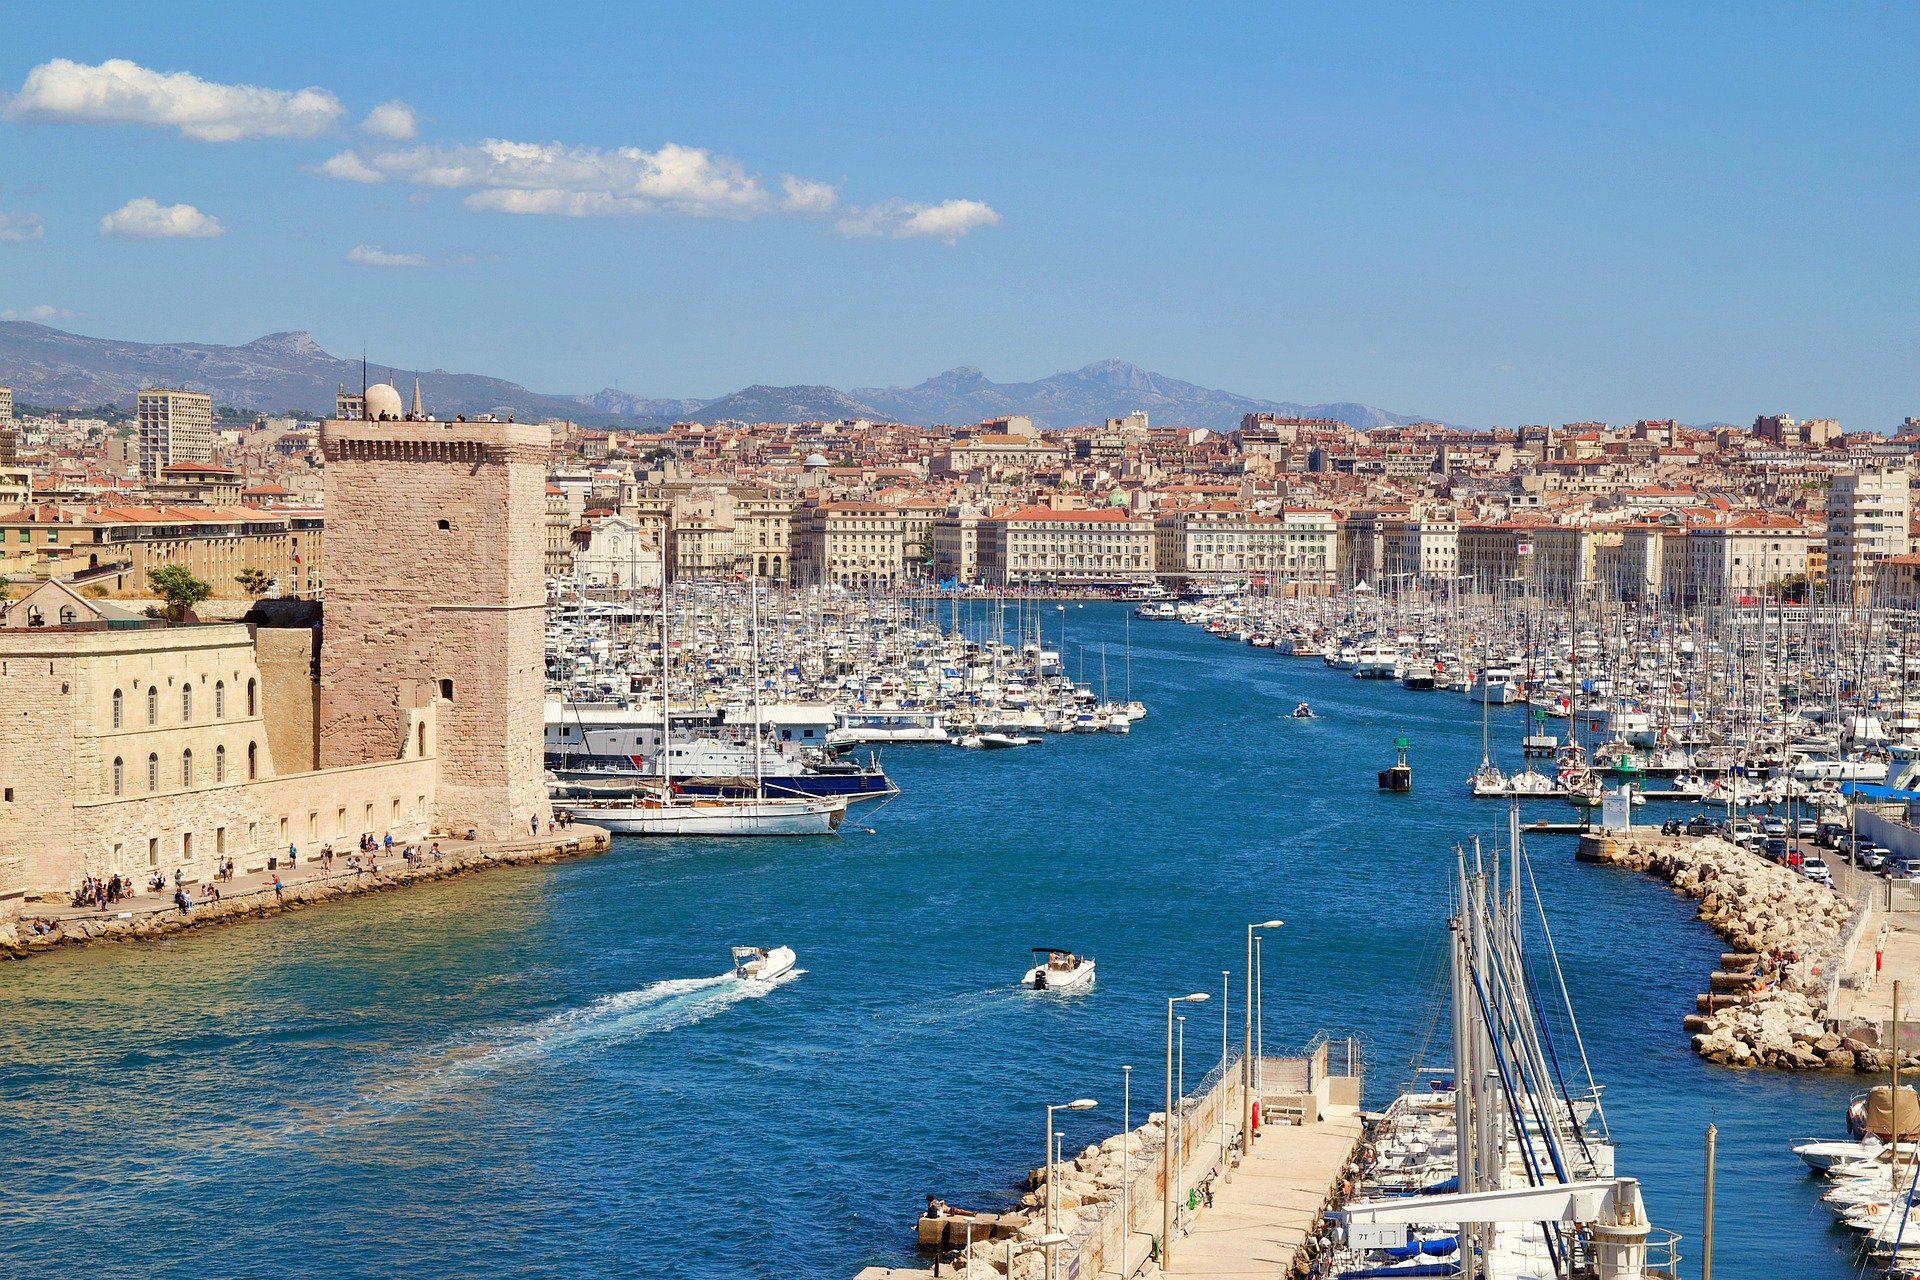 Vue aérienne du port de Marseille